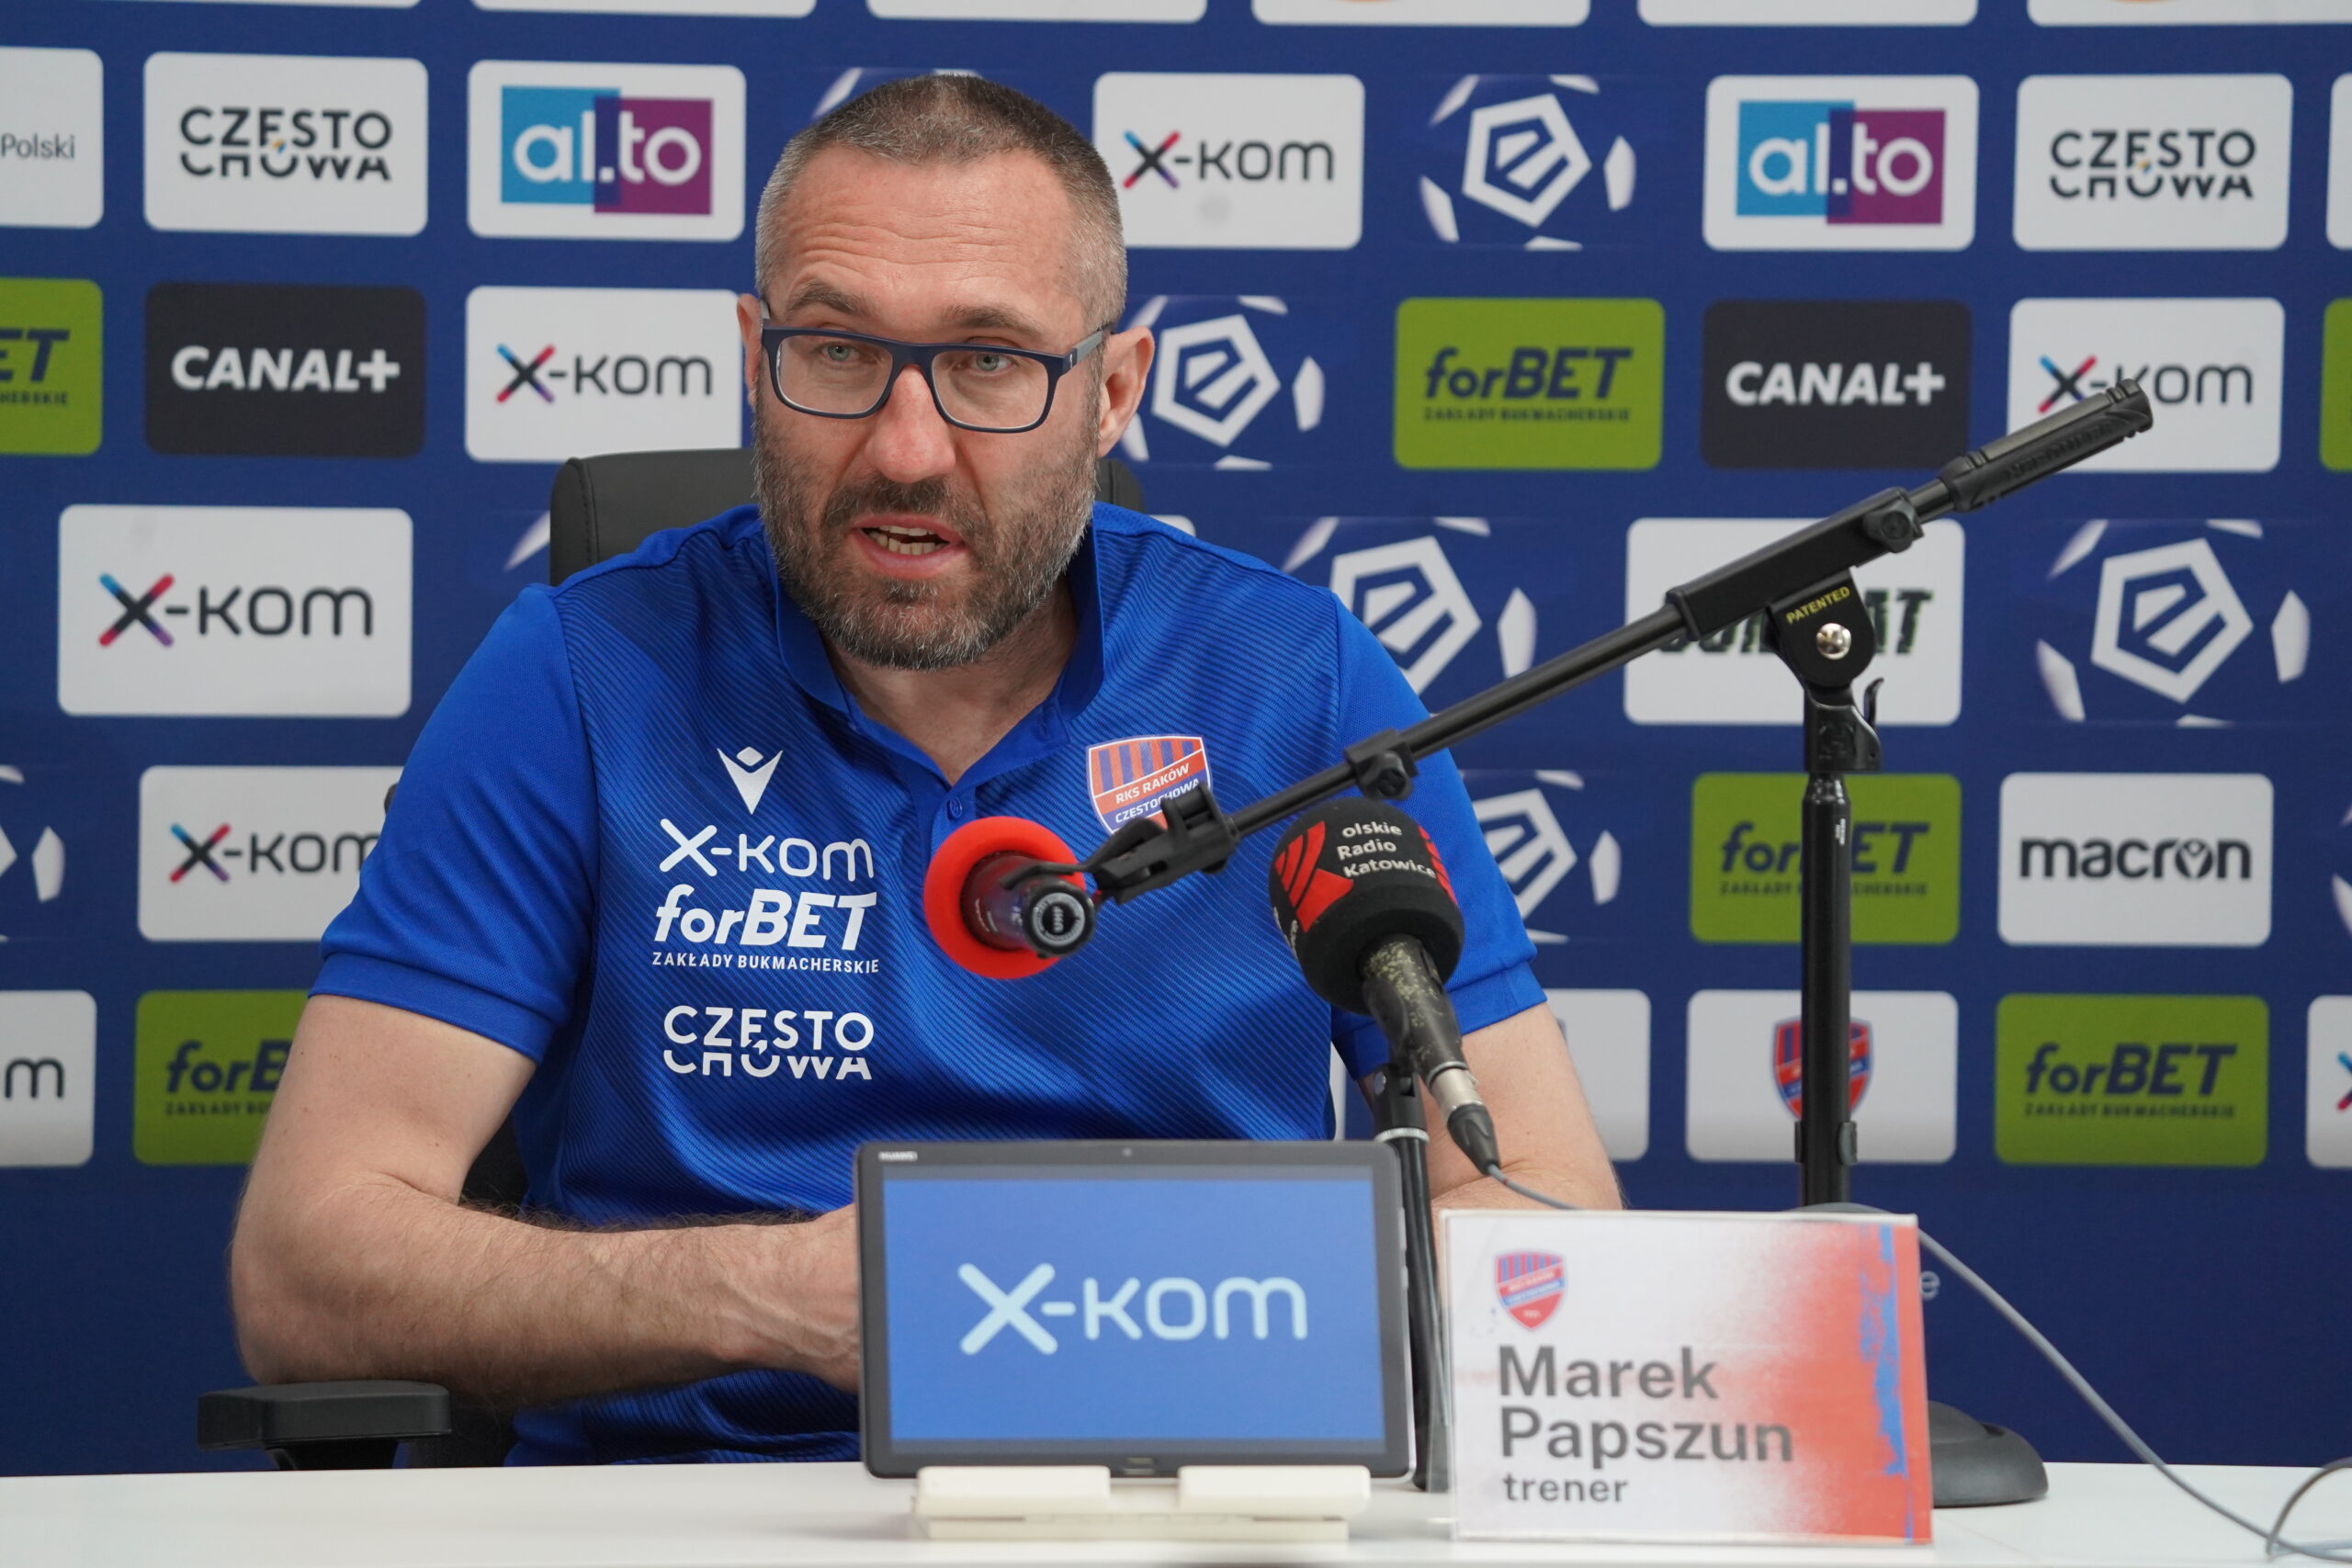 Trener Marek Papszun po meczu z Cracovią: Będziemy walczyć do końca 1